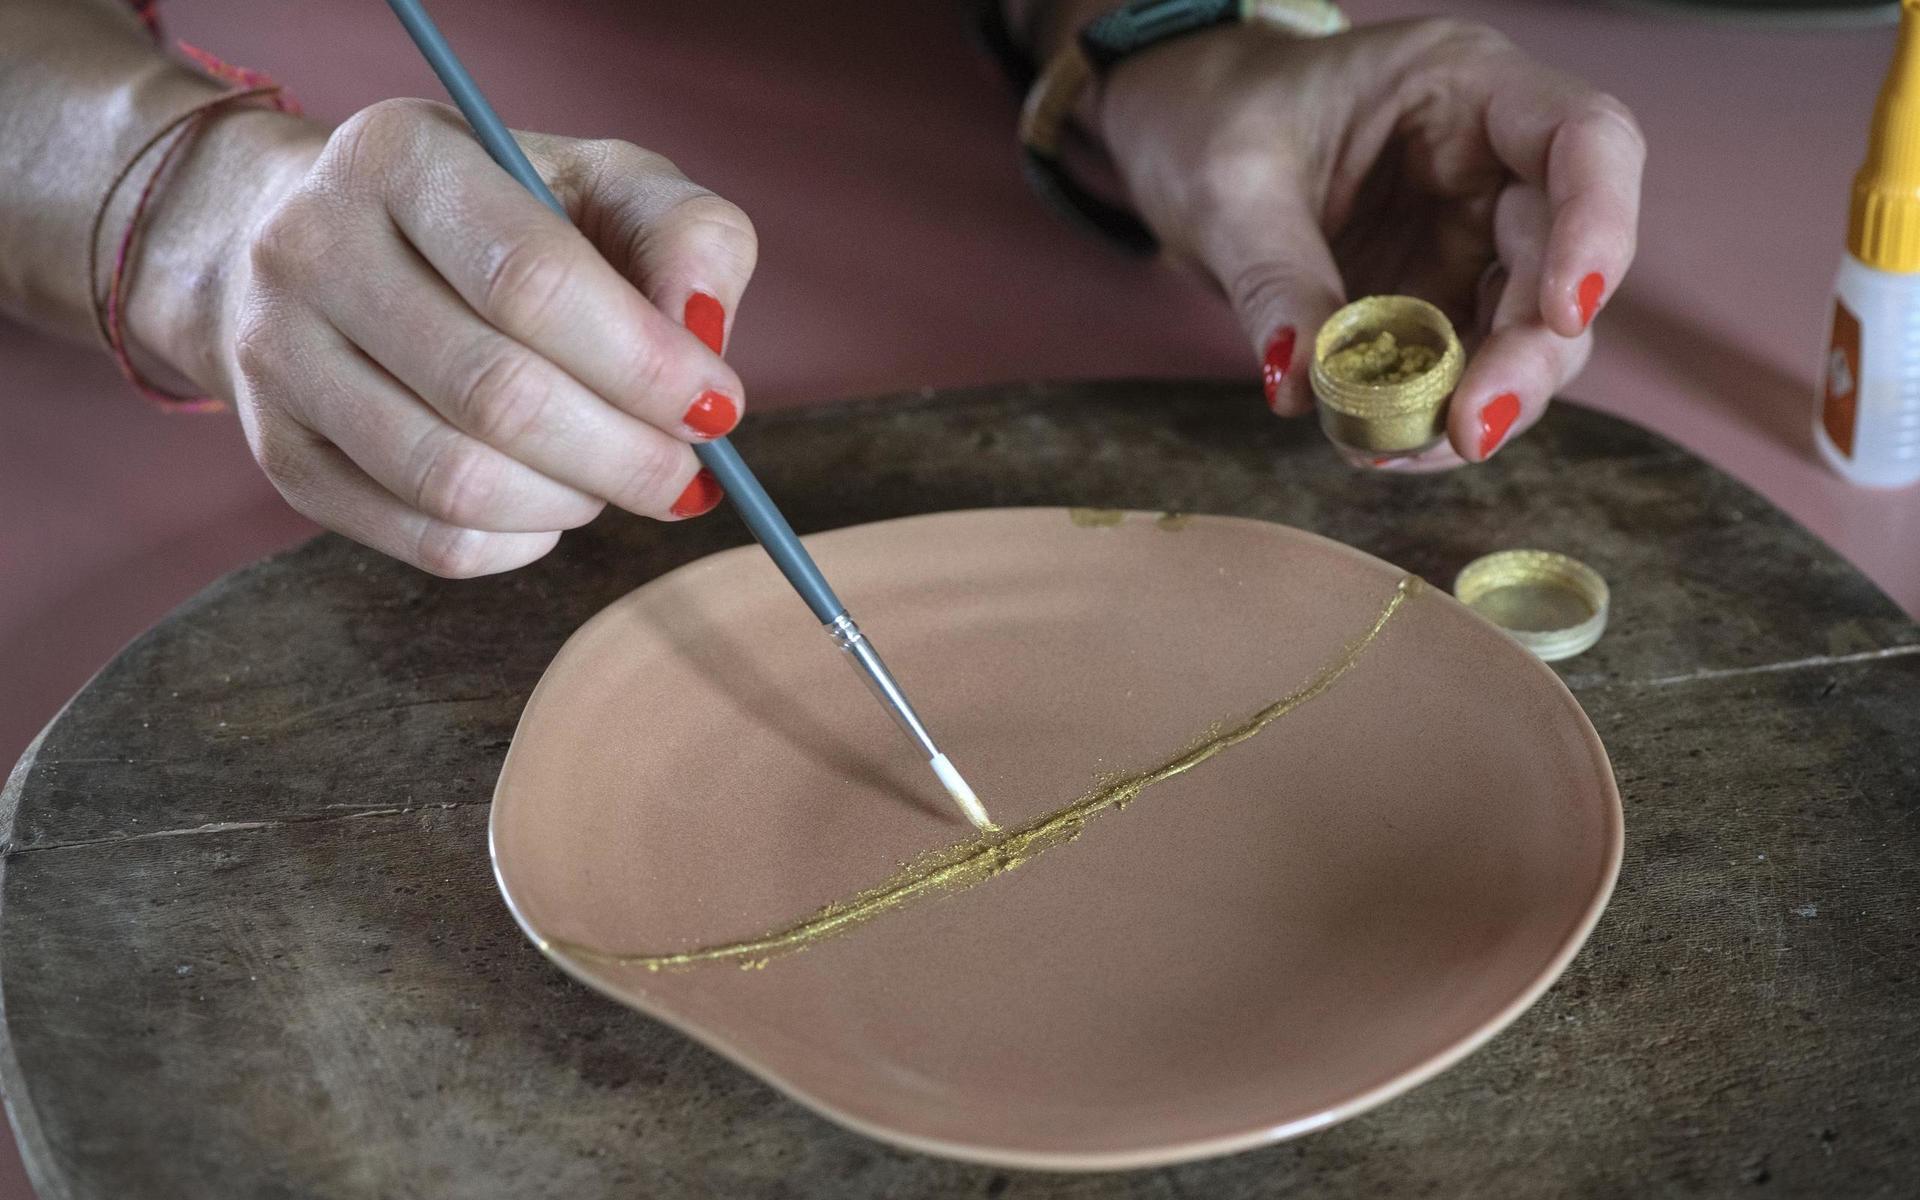 Kintsugi kallas den japanska konsten att laga keramik och porslin med pulvriserat guld.